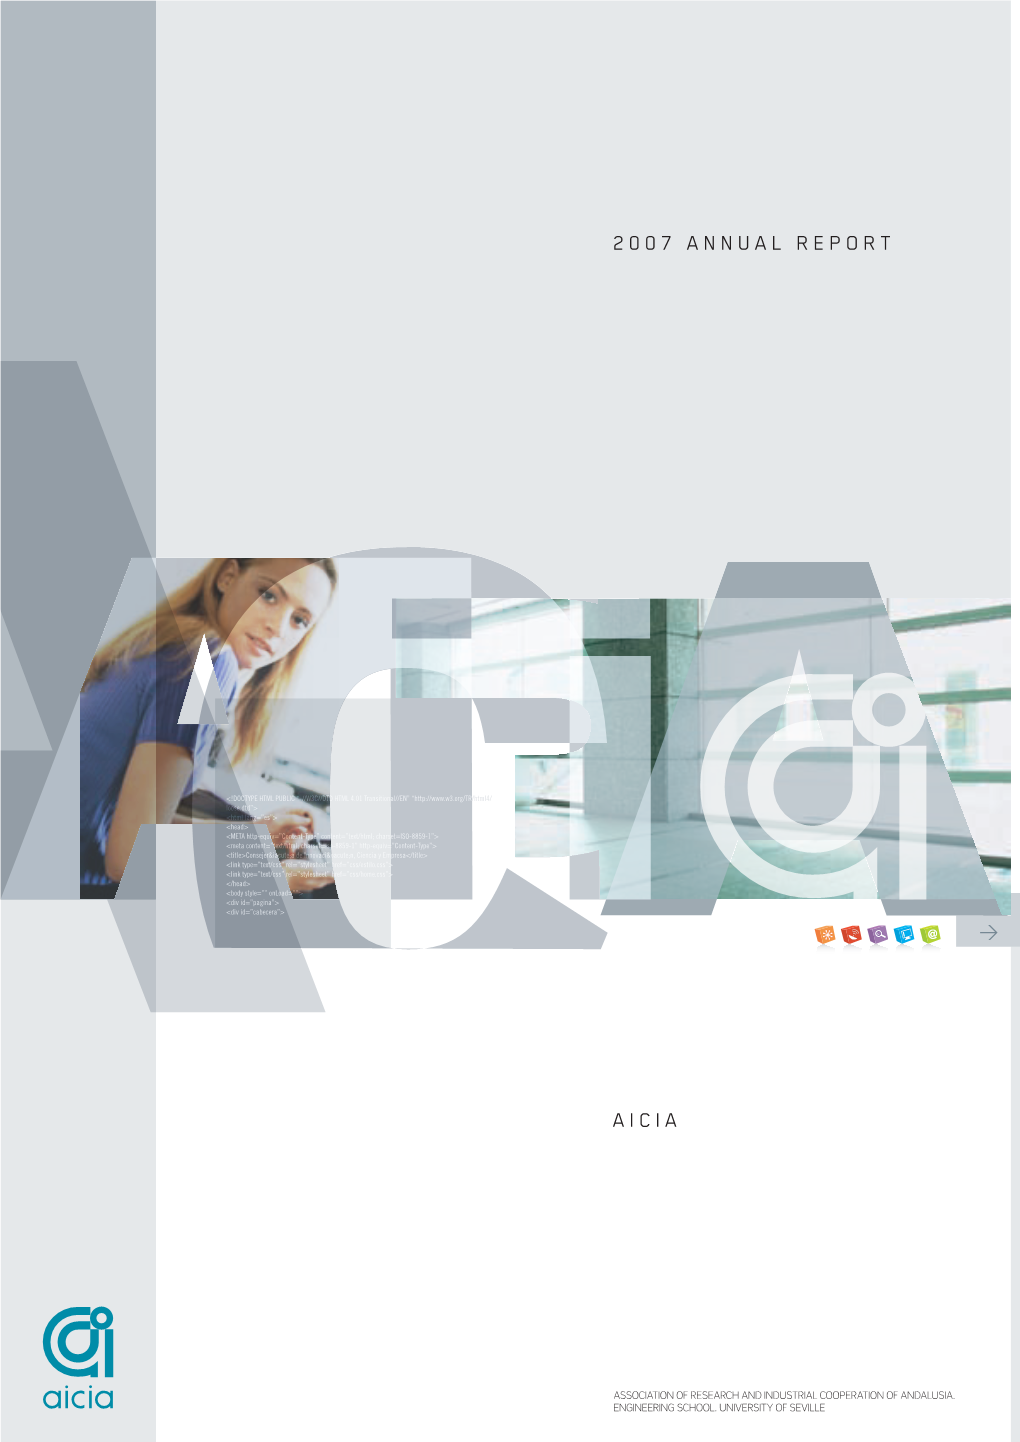 2007 Annual Report Aicia